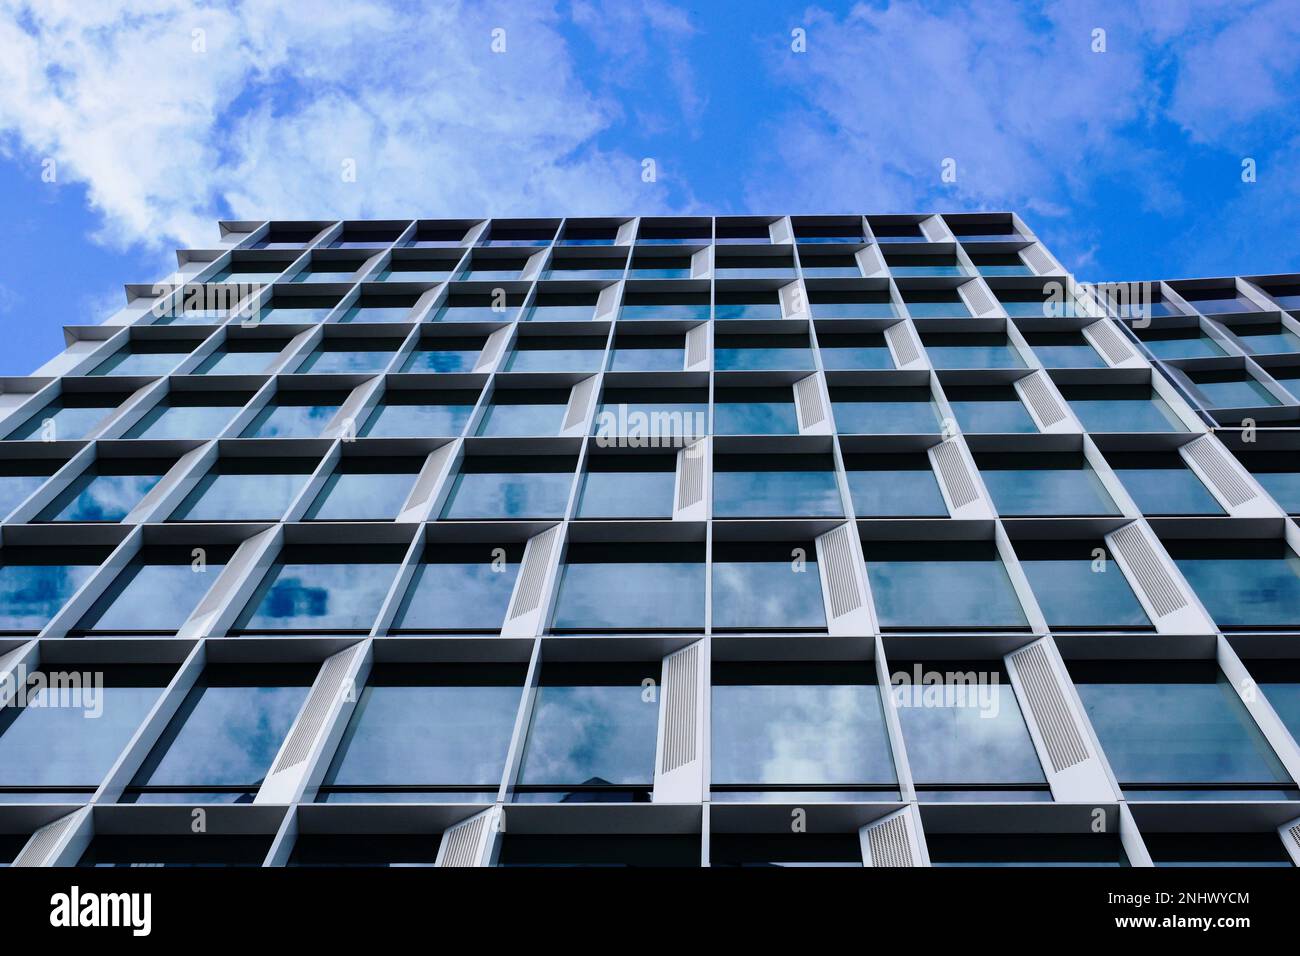 dettaglio della torre di uffici in vetro e alluminio. riduzione della prospettiva. vista astratta ad angolo basso. architettura e design moderni. cielo blu nuvola bianca Foto Stock